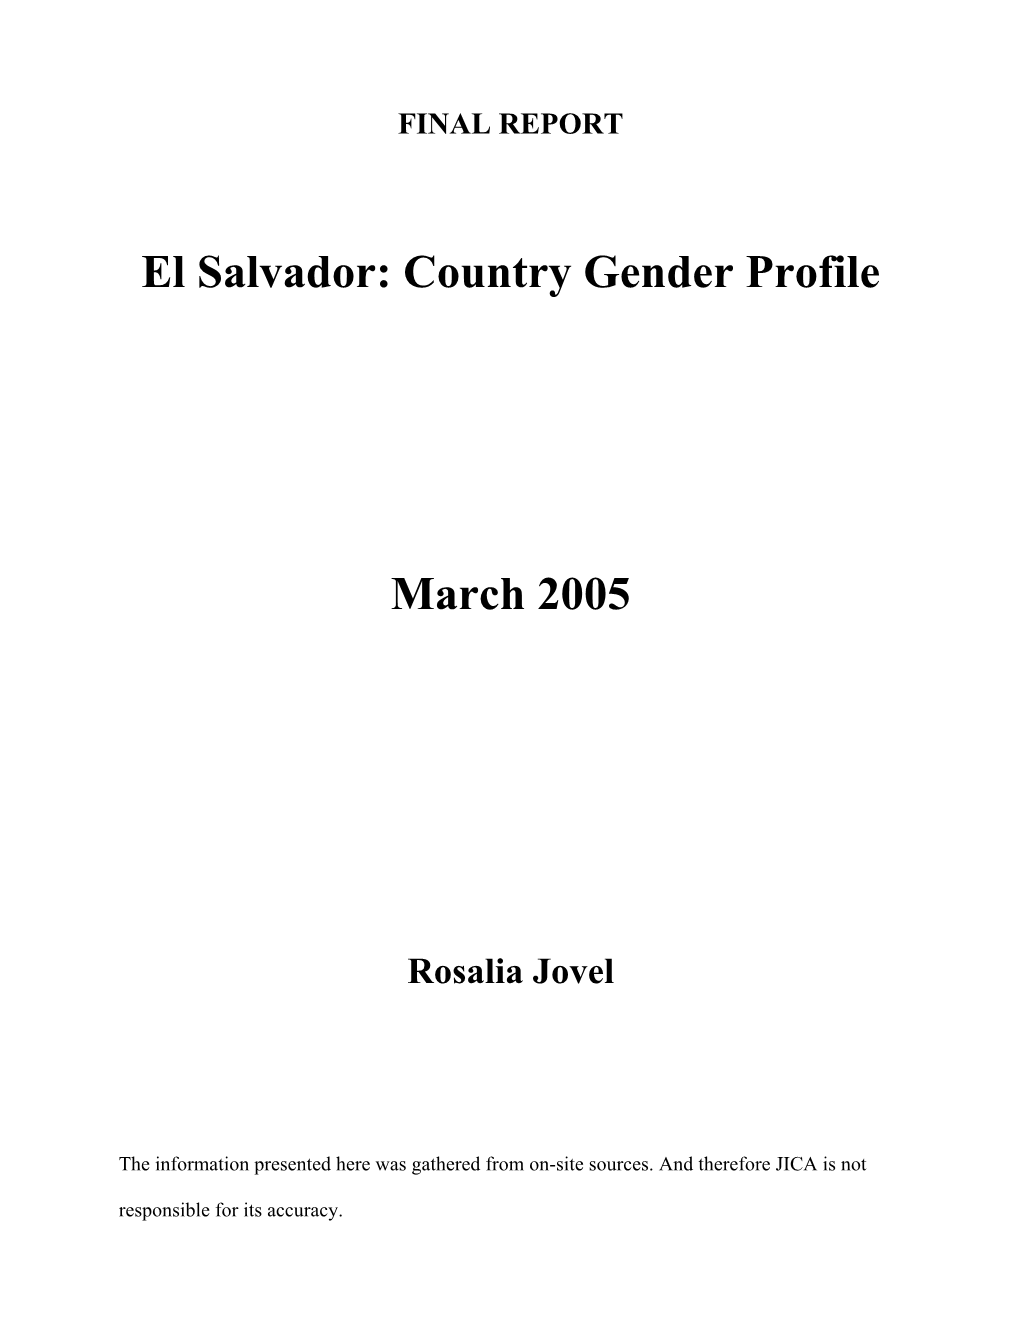 El Salvador: Country Gender Profile March 2005